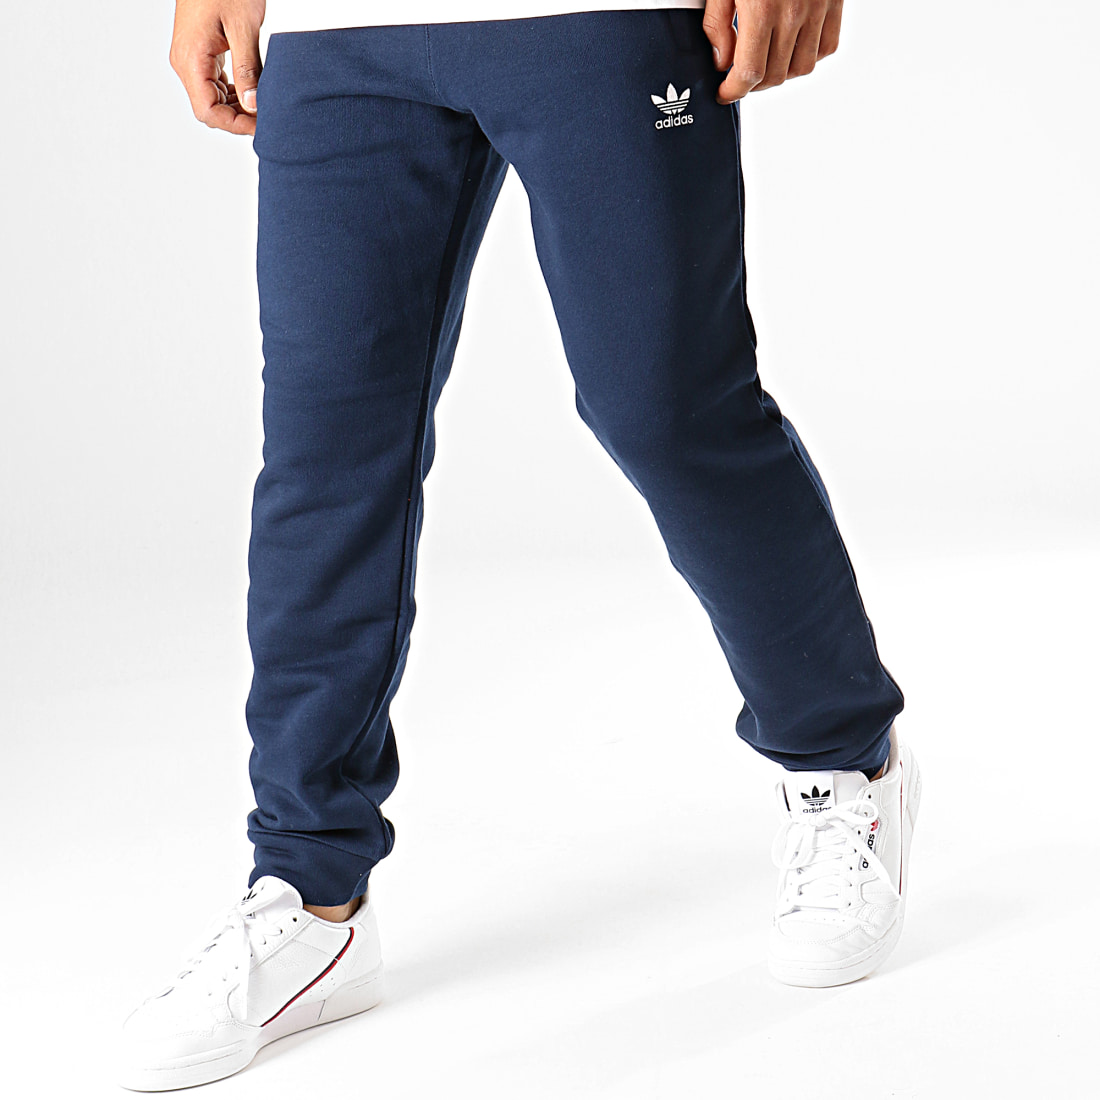 Adidas - Pantalon Jogging ED5951 Bleu Marine Blanc - LaBoutiqueOfficielle.com